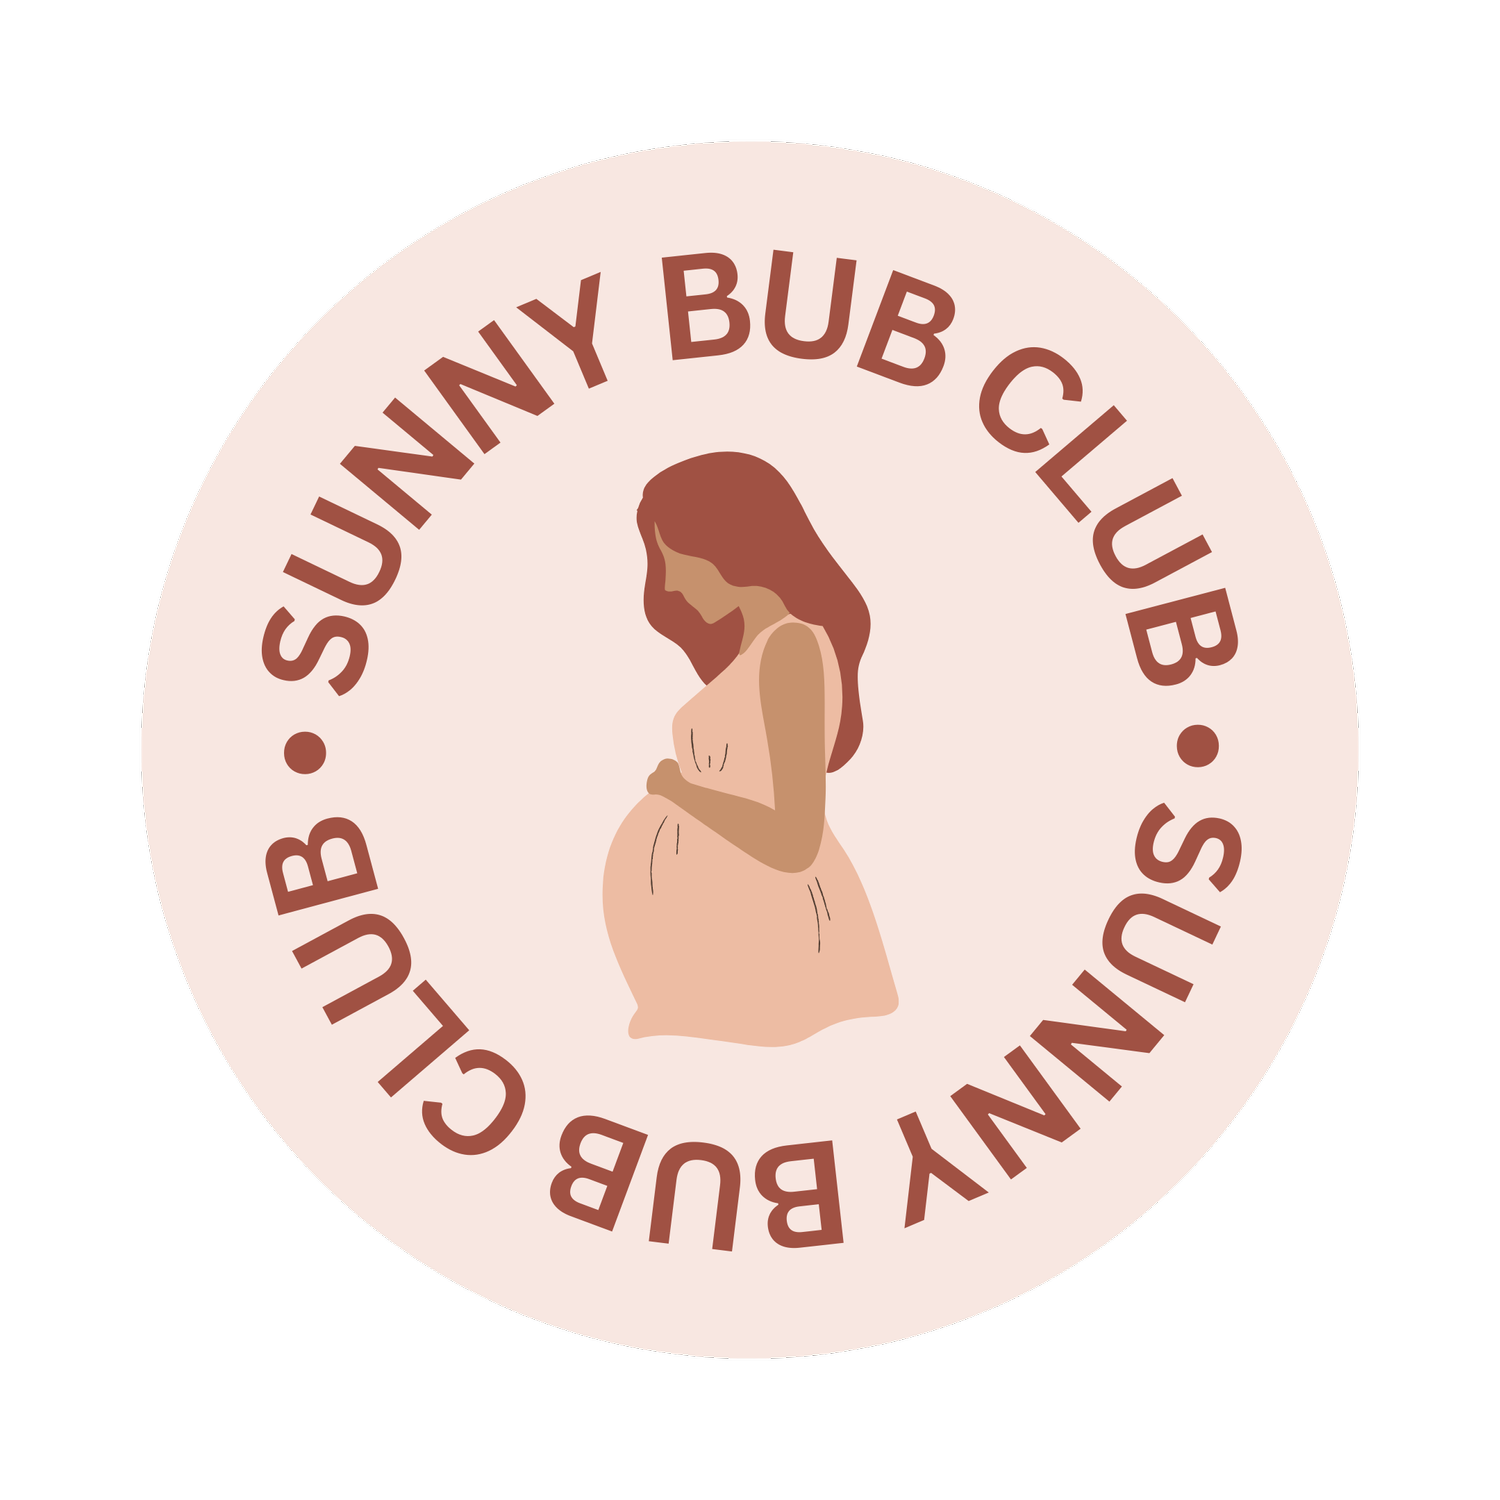 Sunny Bub Club 